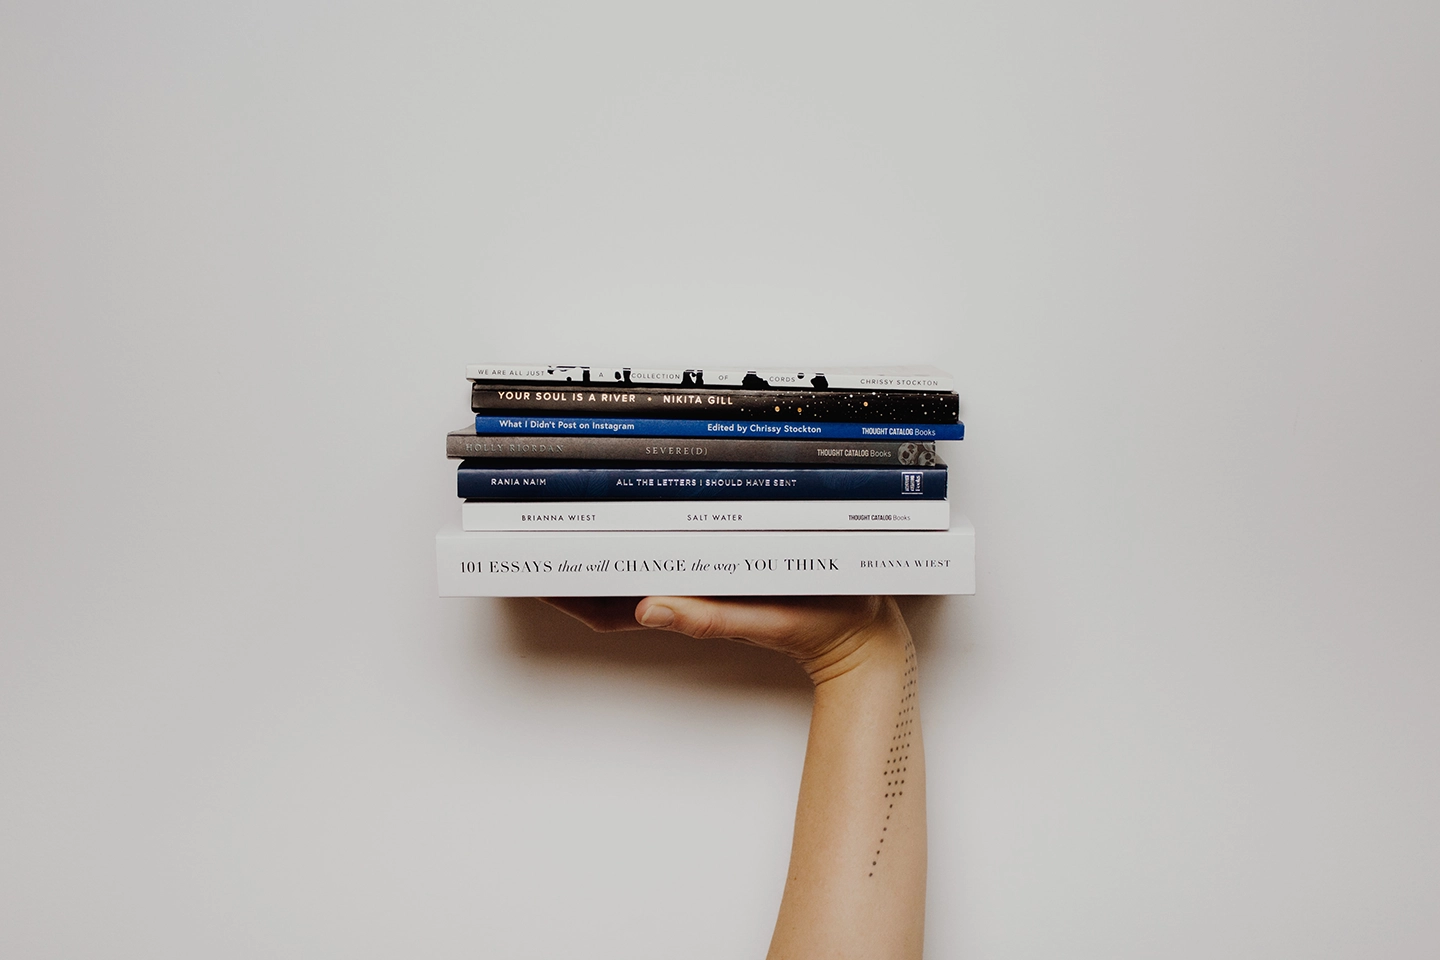 Eine Hand hält einen Stapel von fünf Büchern gegen einen hellen Hintergrund.